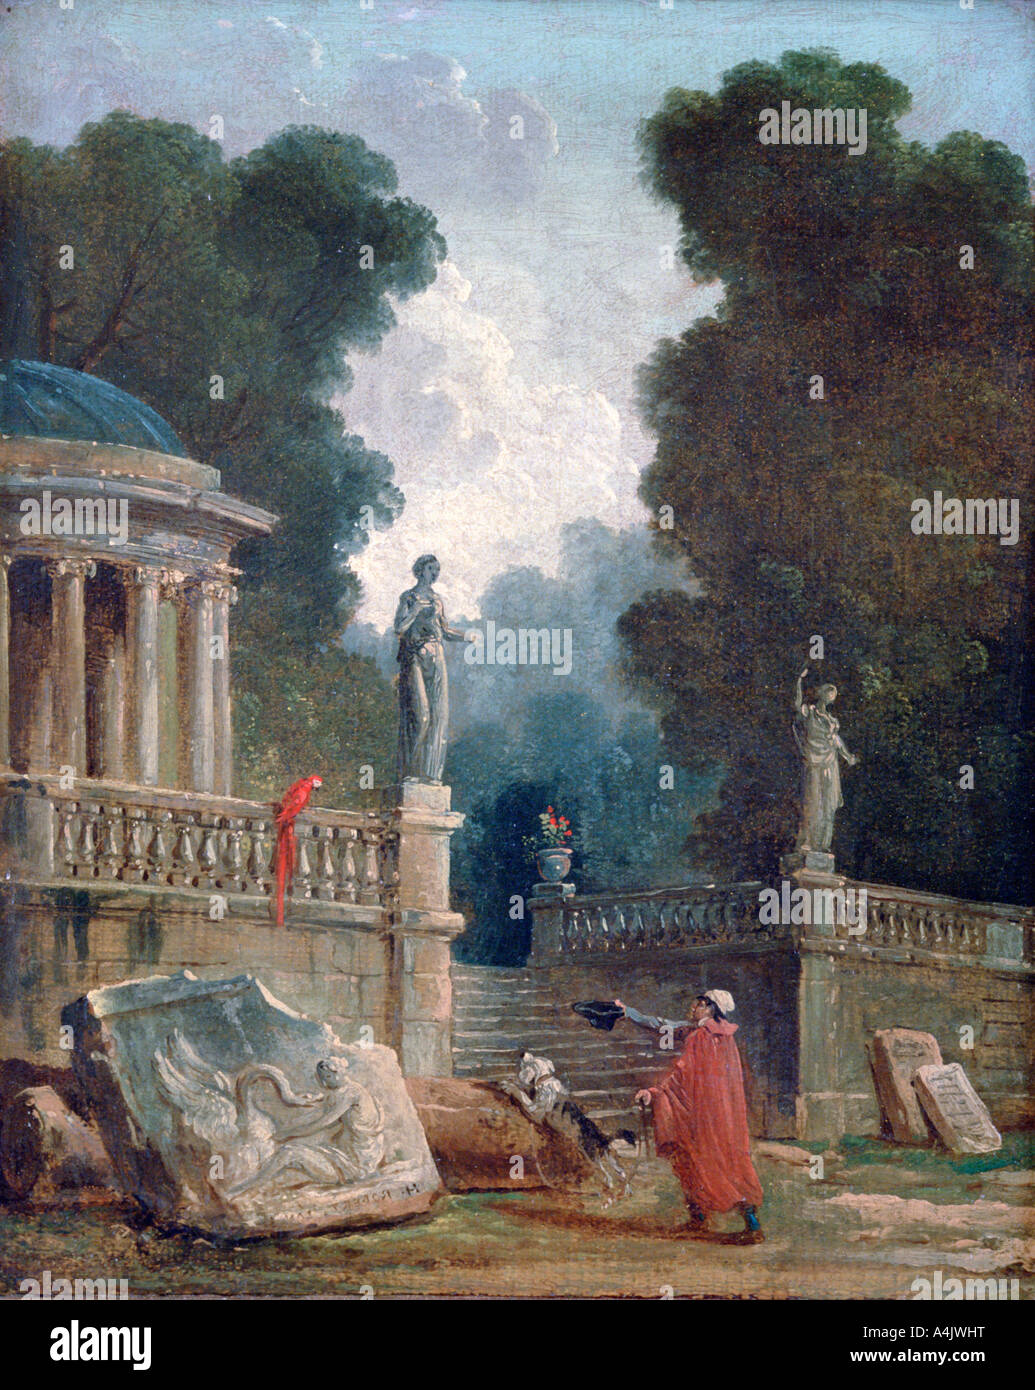 'The Beggar and the Parrot', c1750-1808. Artist: Robert Hubert Stock Photo